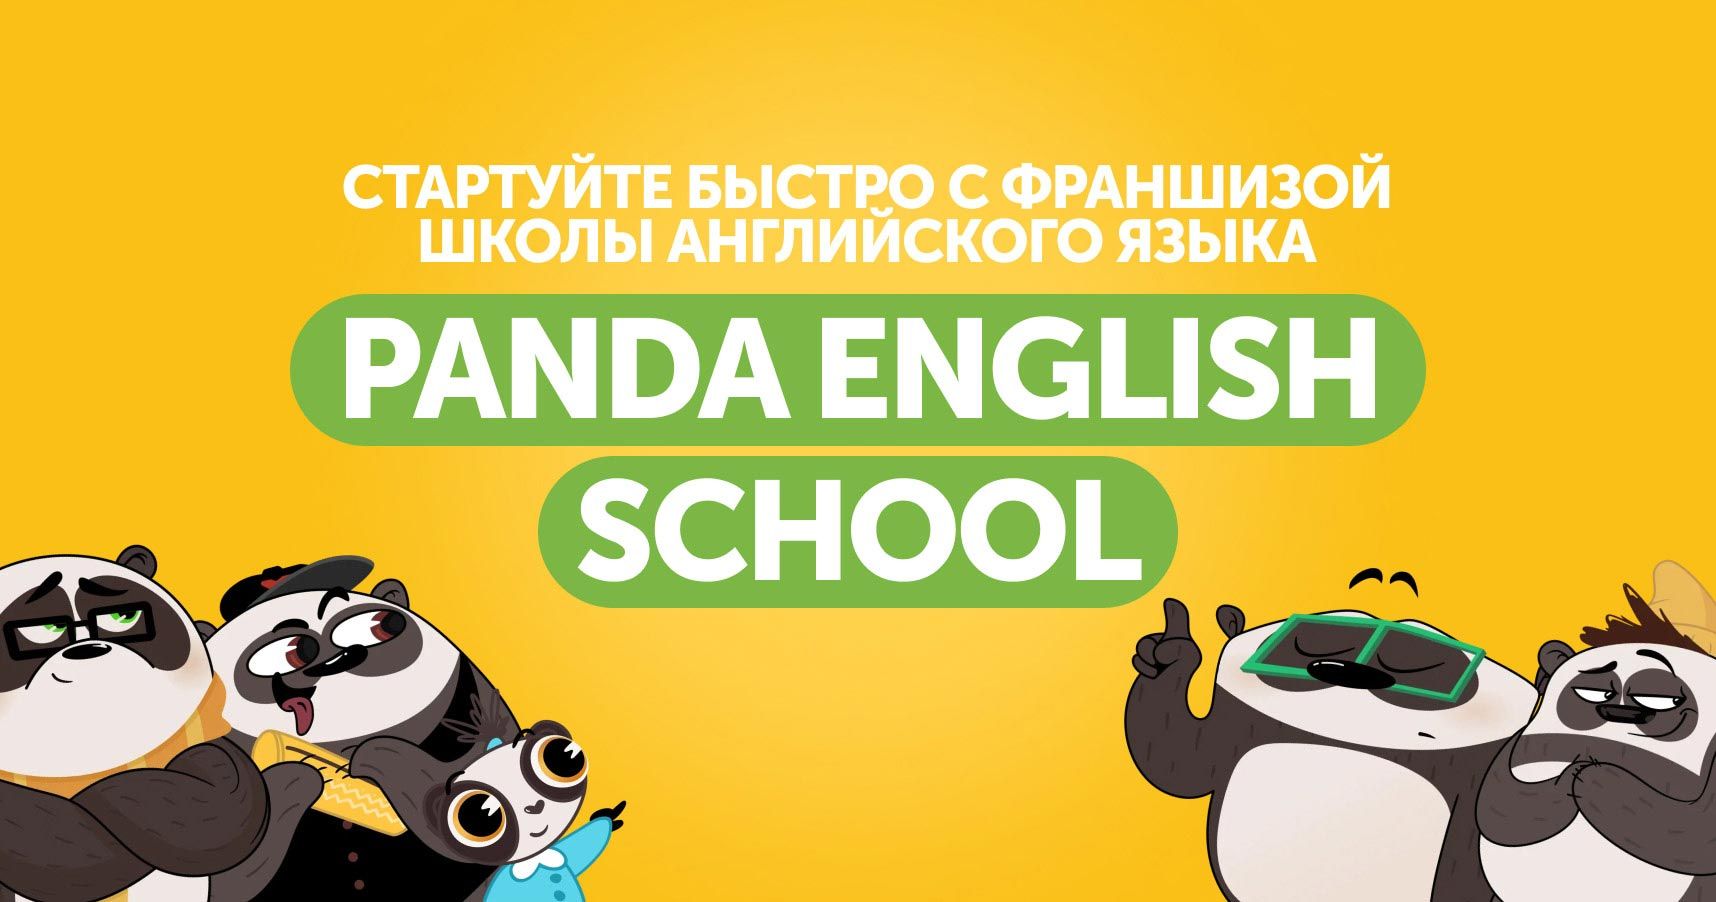 Франшиза школы английского языка для всей семьи Panda English School